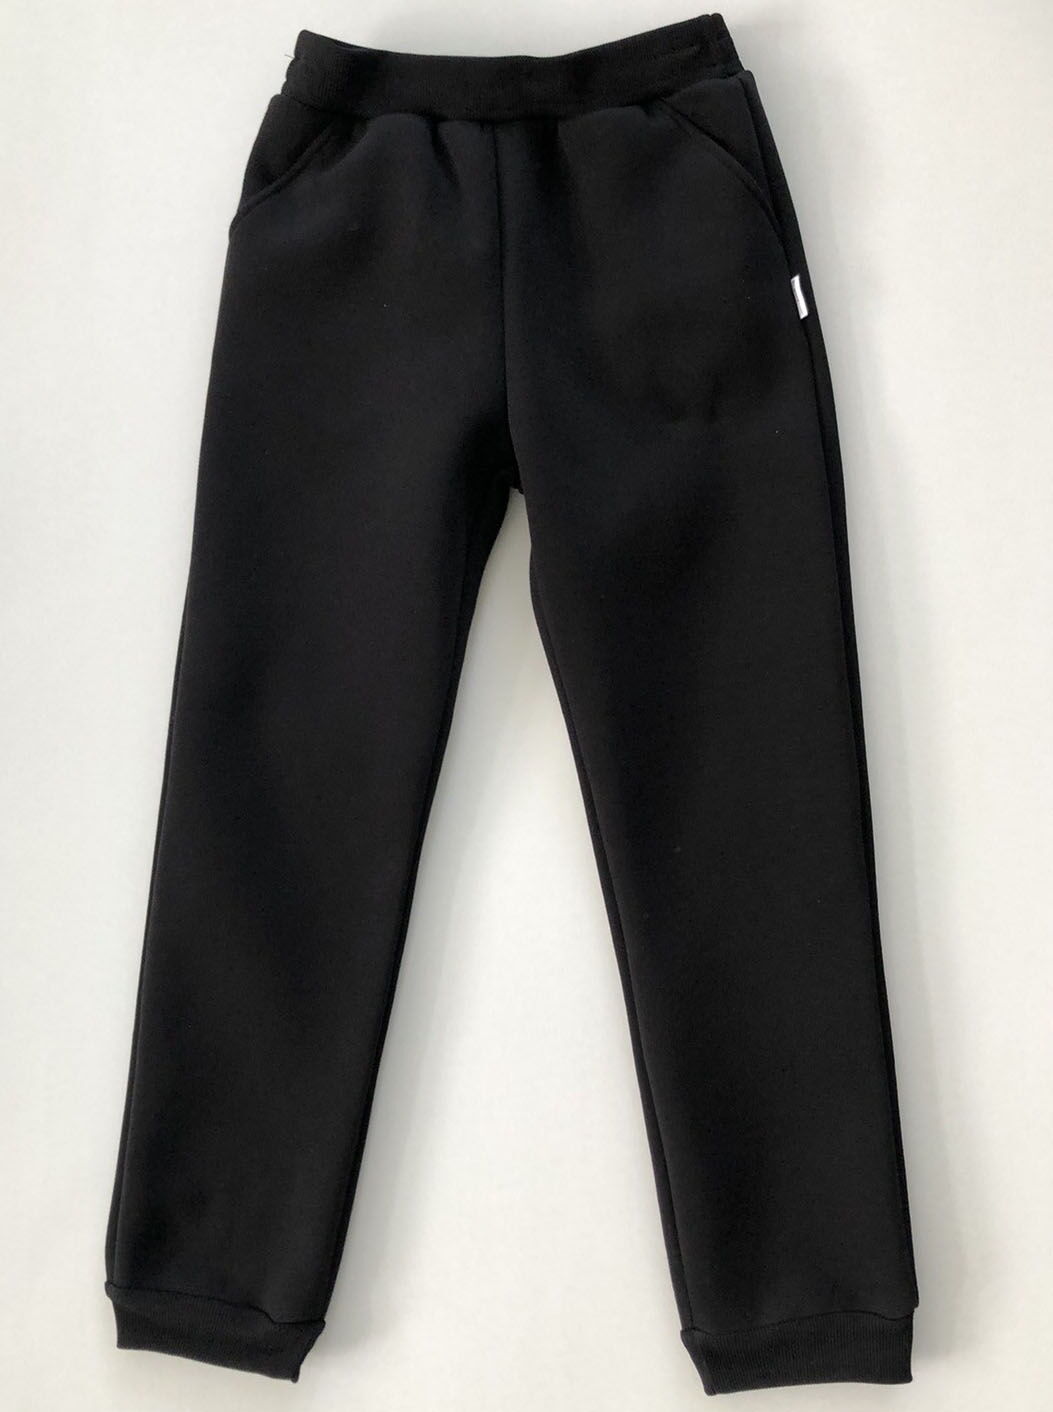 Утепленные спортивные штаны детские Робинзон черные 376 - цена